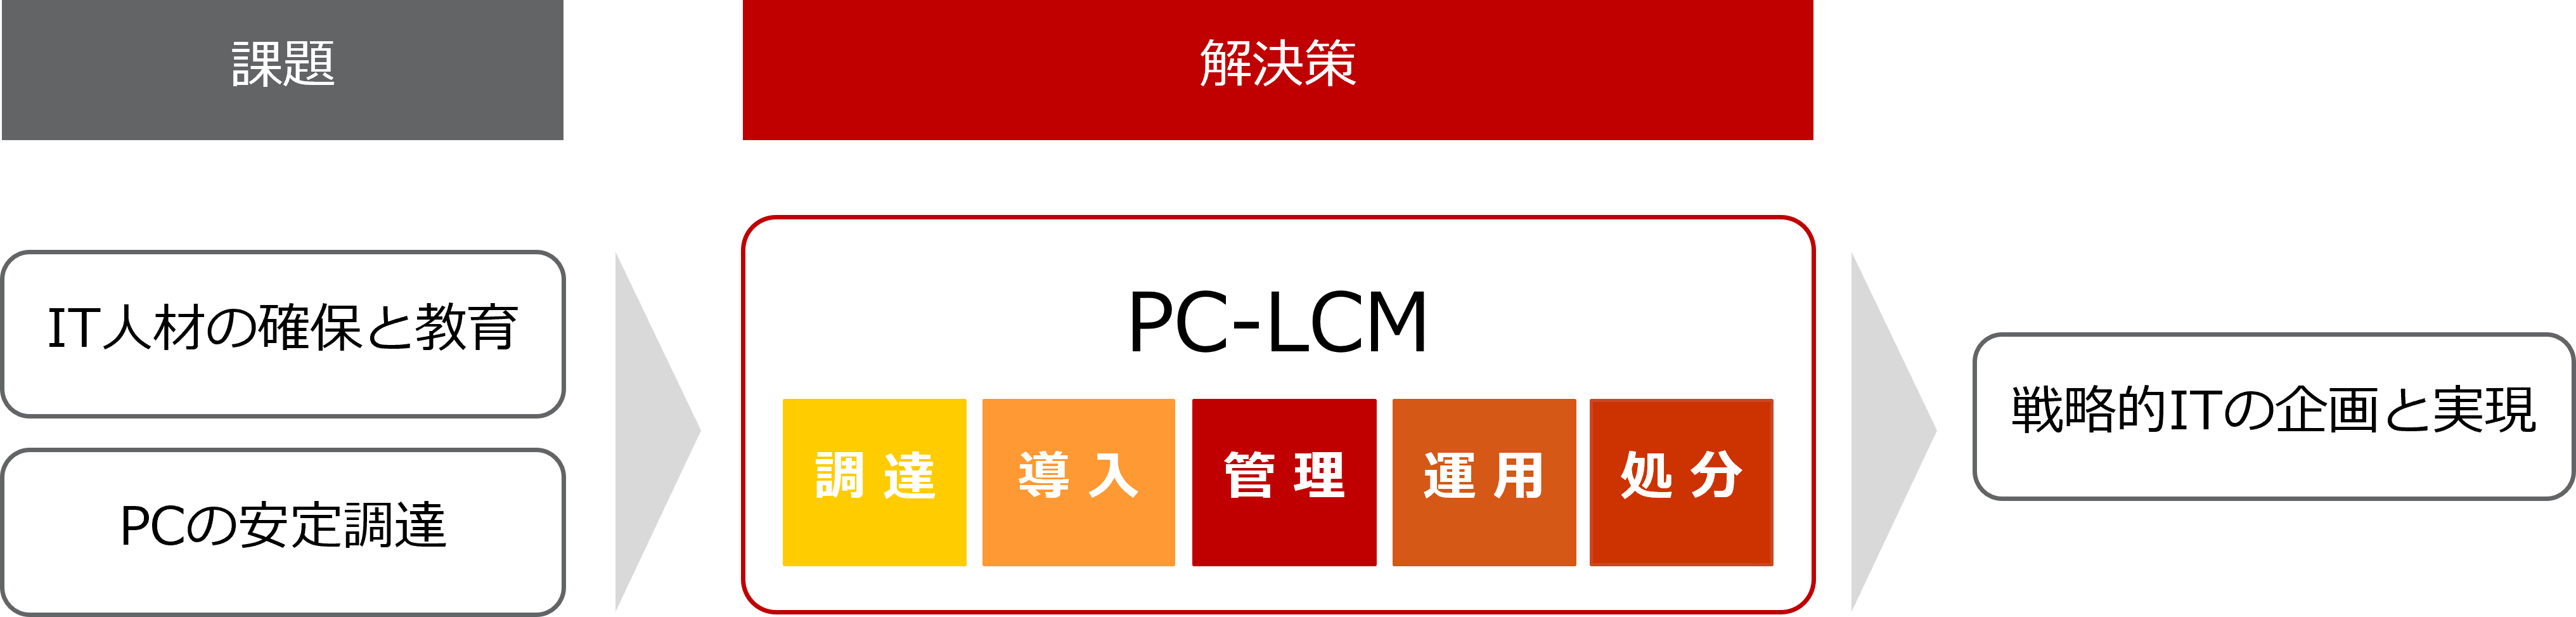 戦略的ITの実現に向けた課題と解決策、PC-LCM